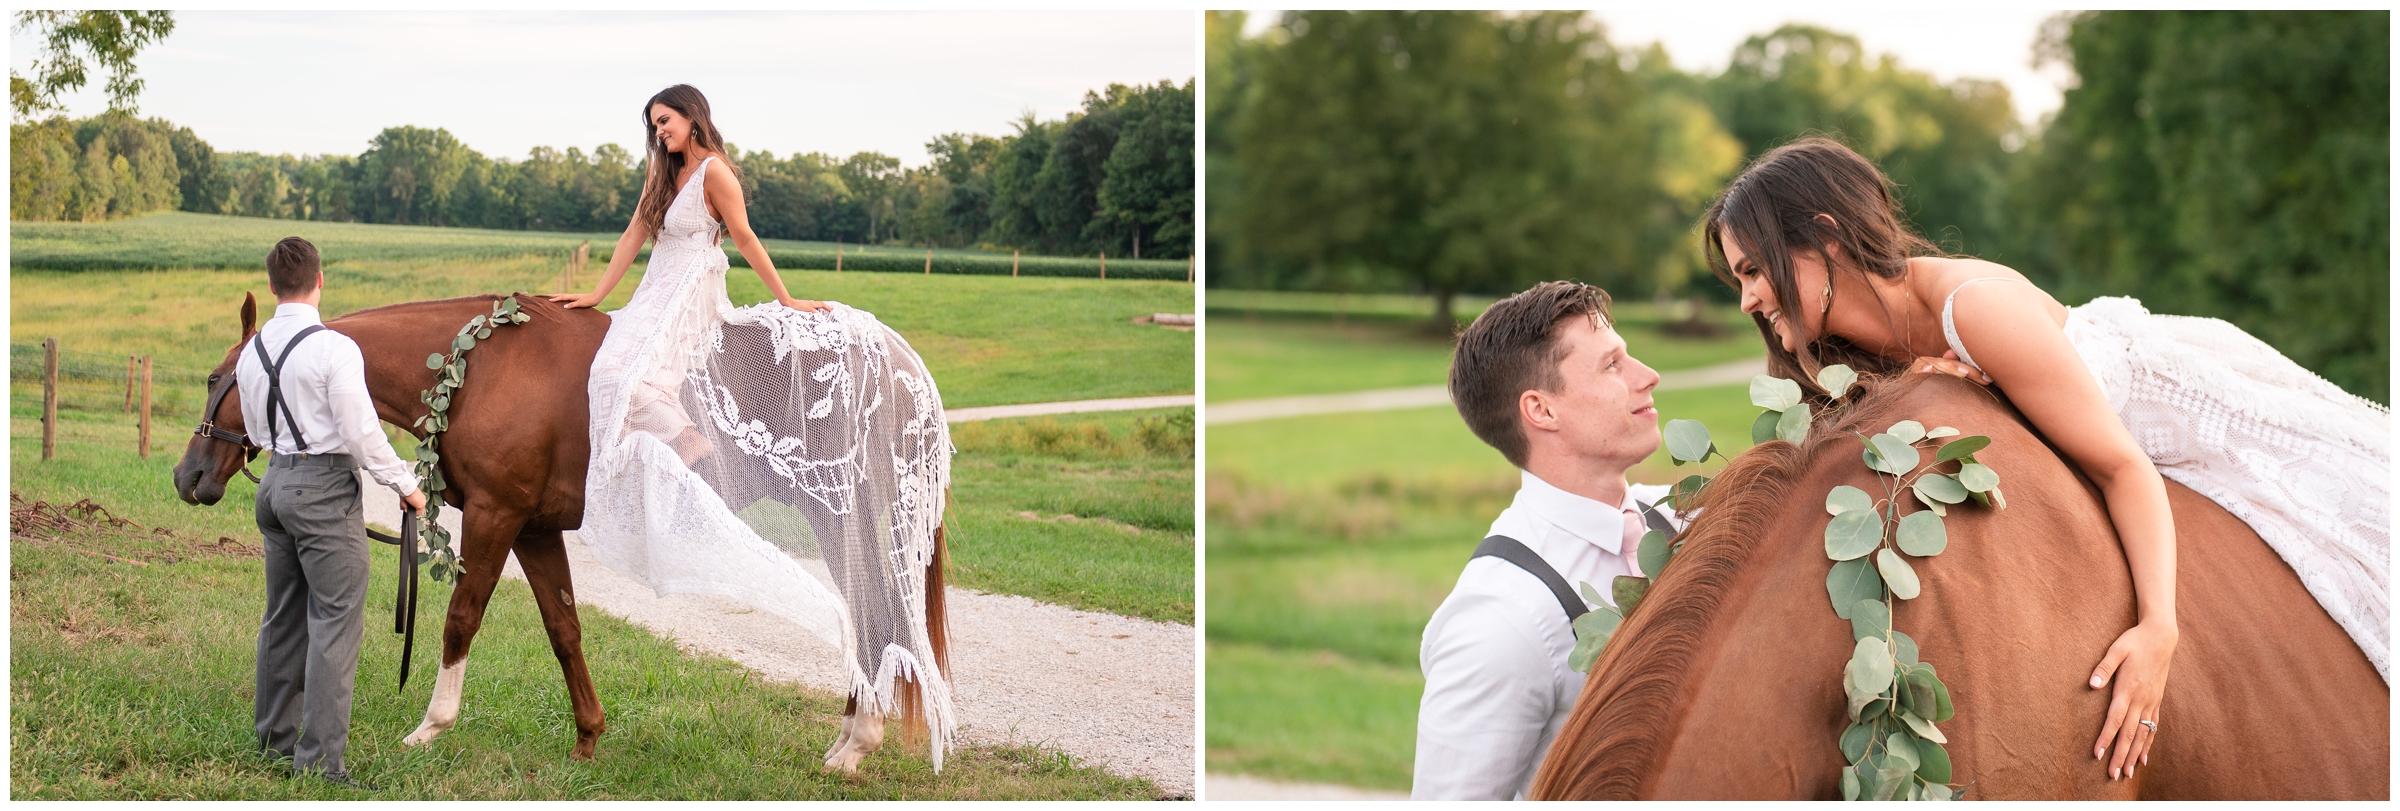 Farm Wedding, Bride on Horse